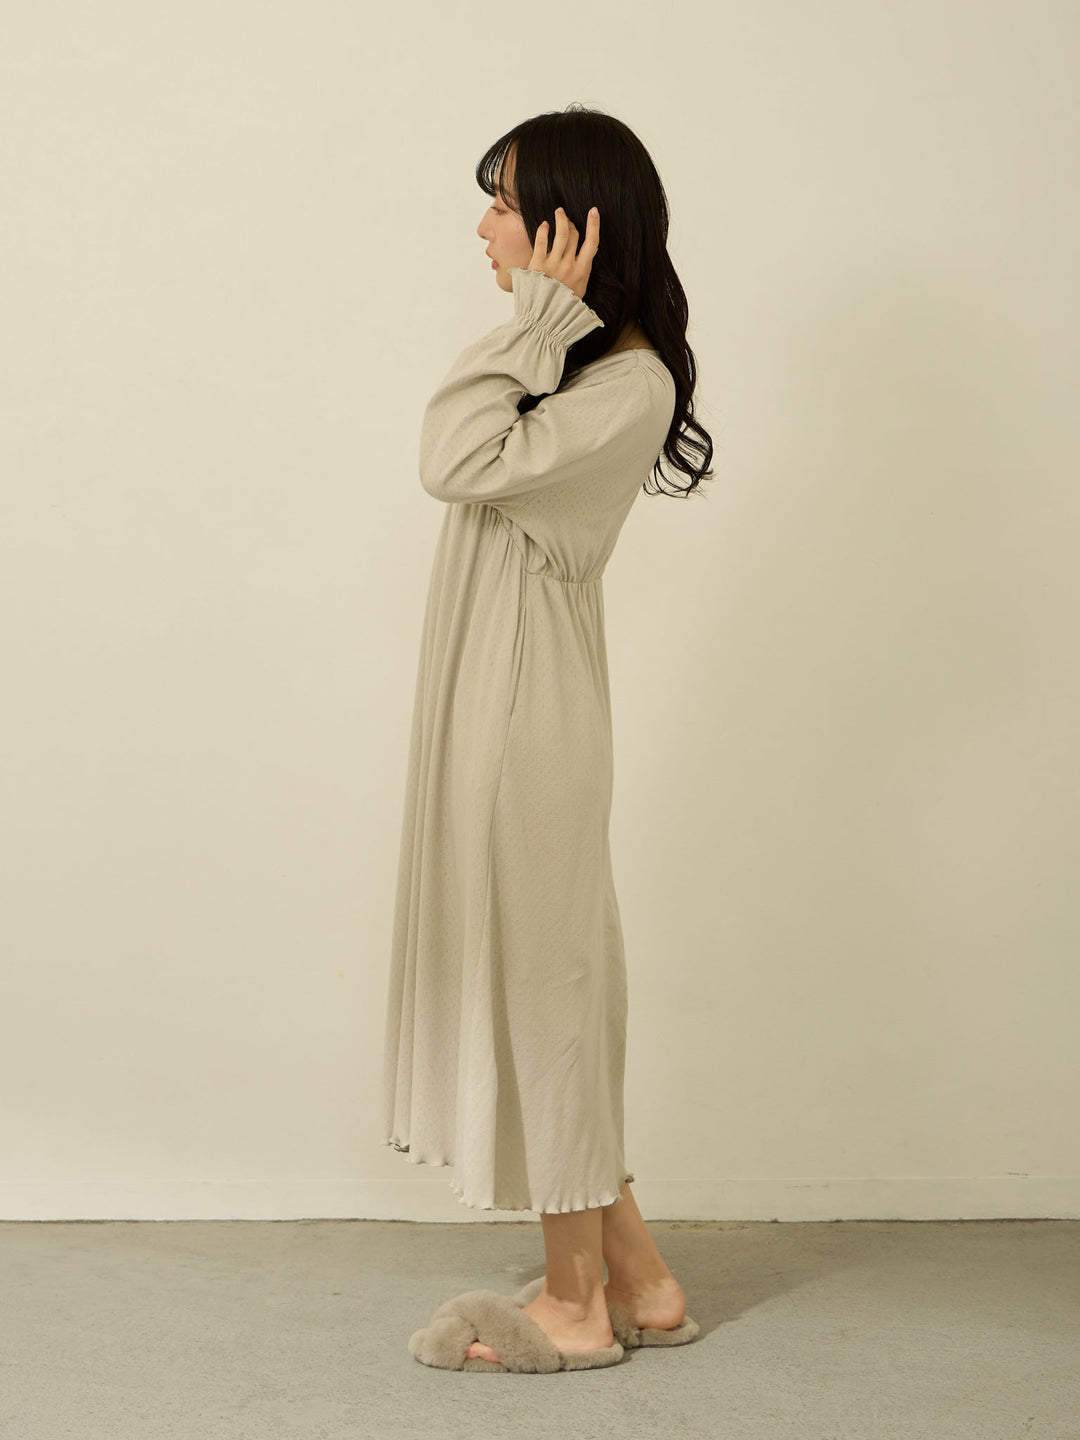 【マタニティ・授乳服】ズレないパット付き綿カシュクールルームワンピース Light gray